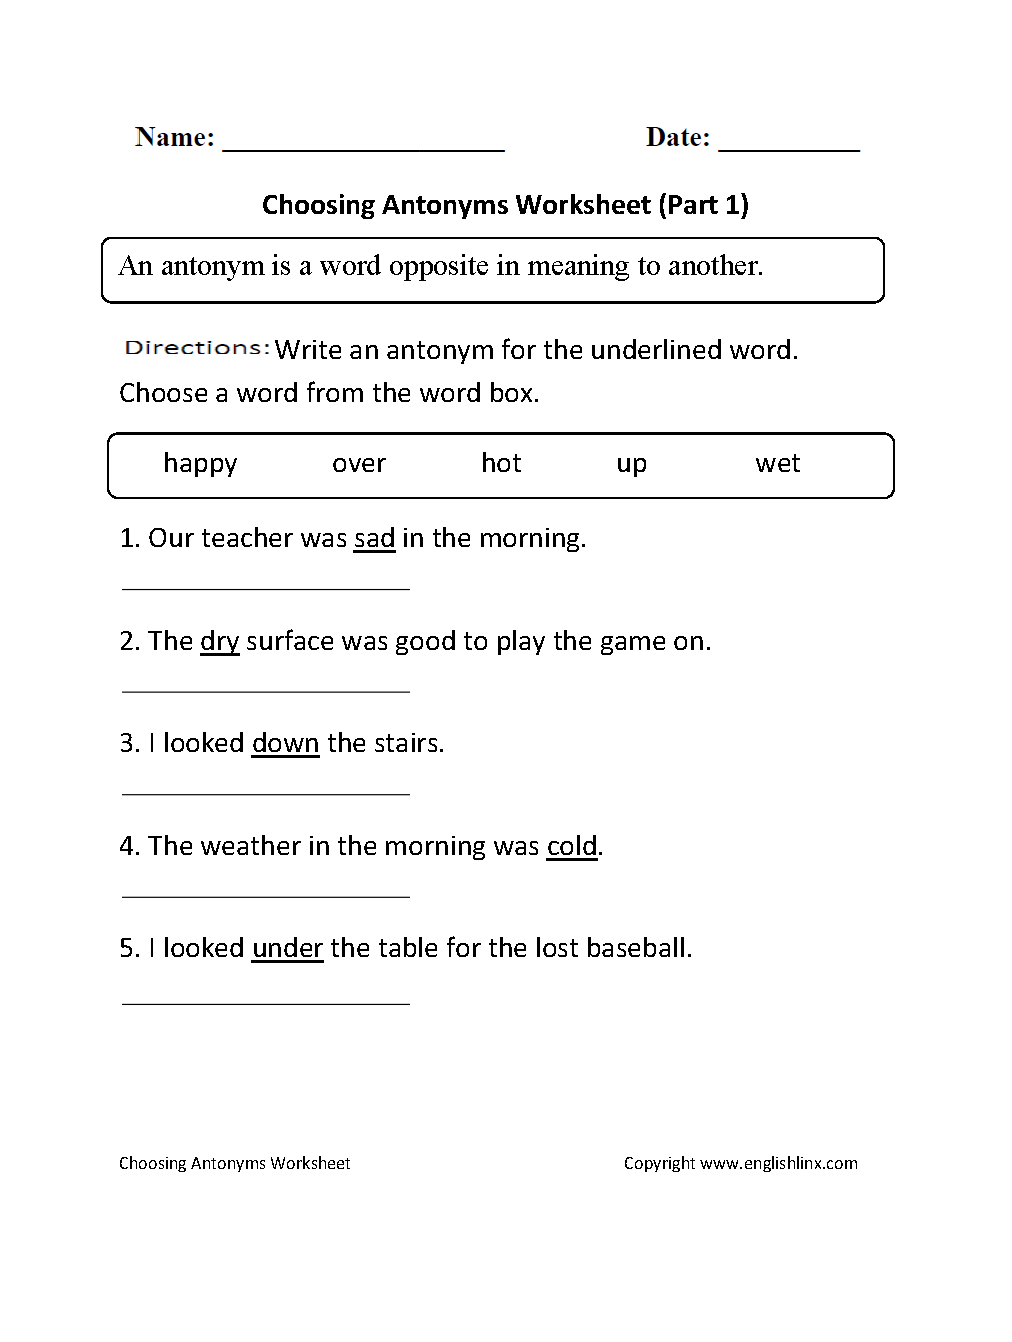 antonyms-worksheets-choosing-antonyms-worksheet-part-1